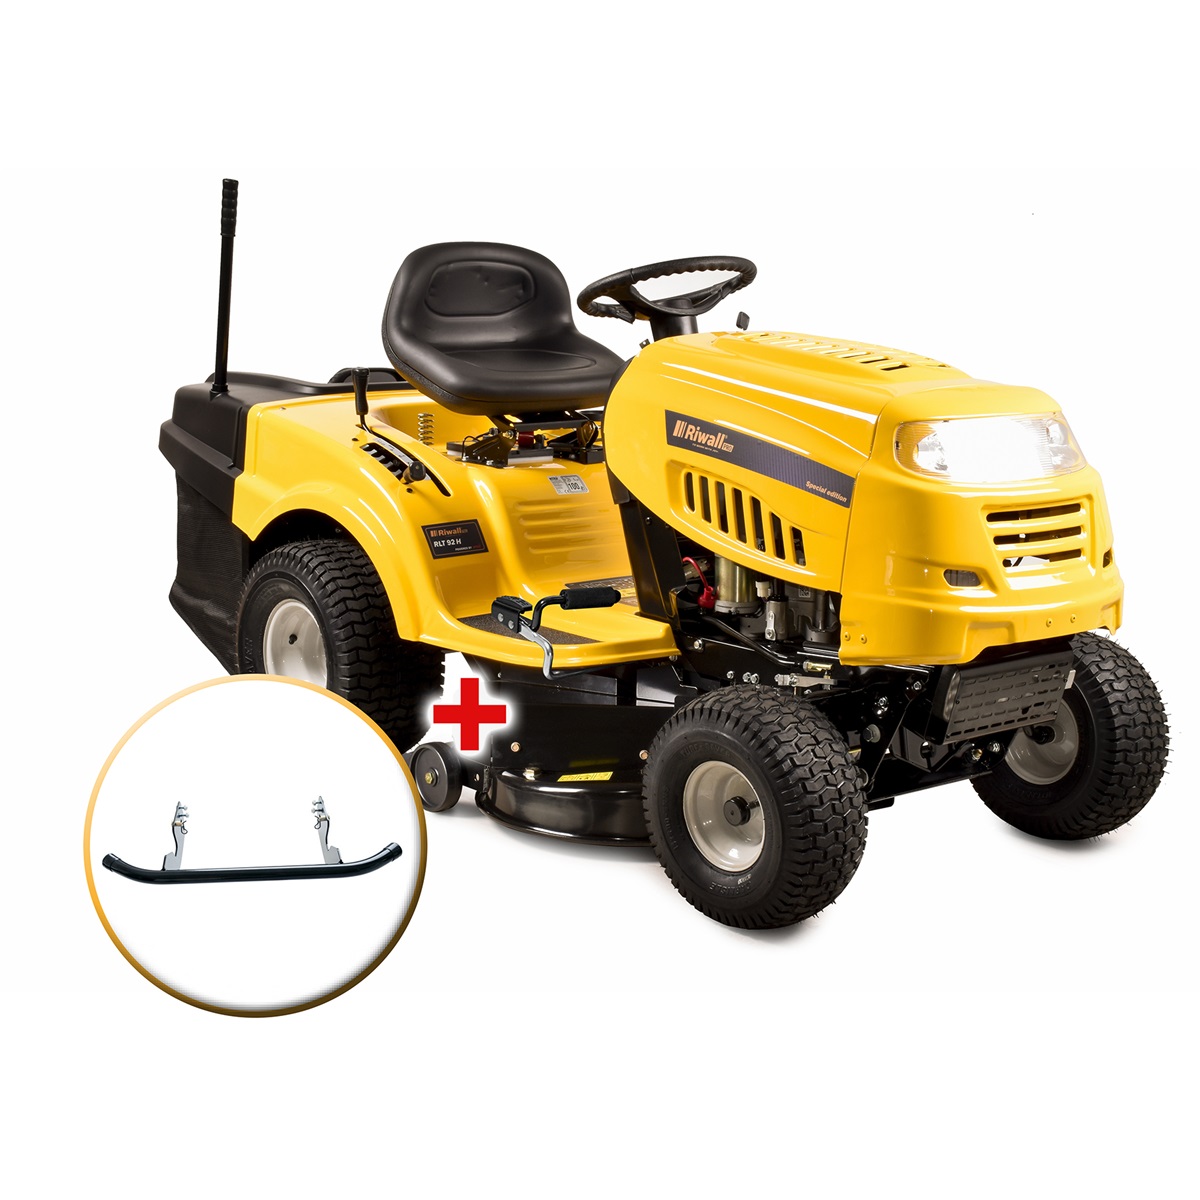 Riwall PRO RLT 92 H zahradní traktor + sestavení + příprava k provozu + servis EXTRA